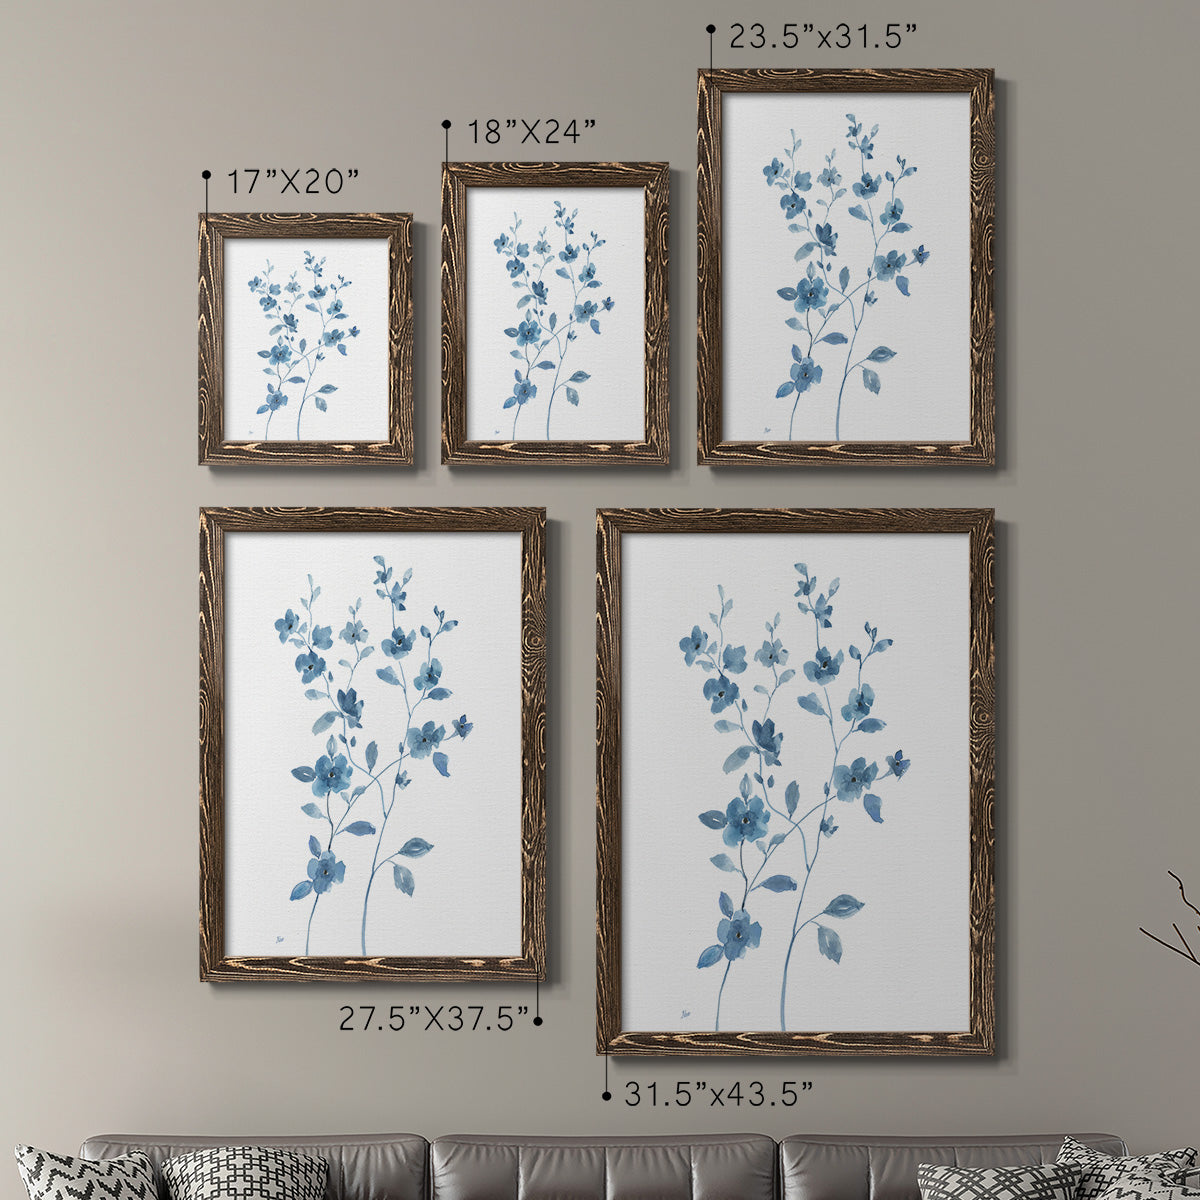 Blue Blossom I - Premium Framed Canvas 2 Piece Set - Ready to Hang